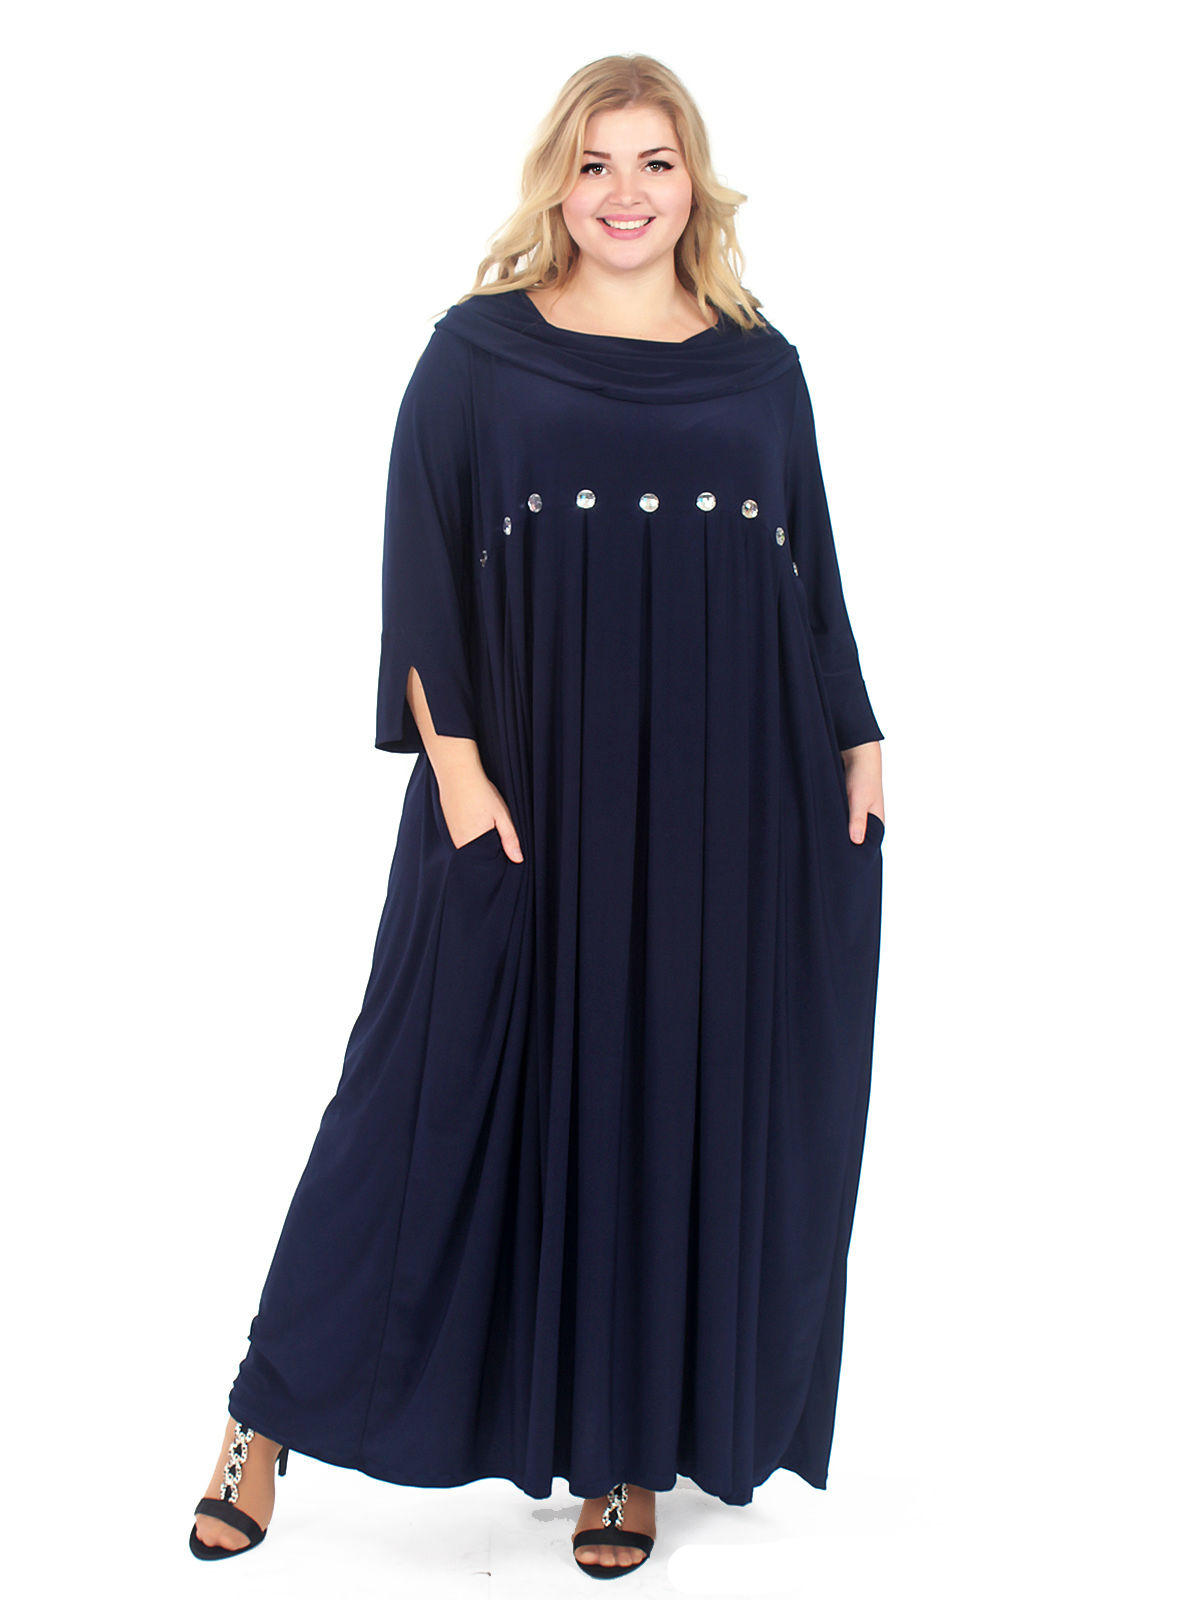 Свободное платье с воротником-хомут и крупными стразами, синее